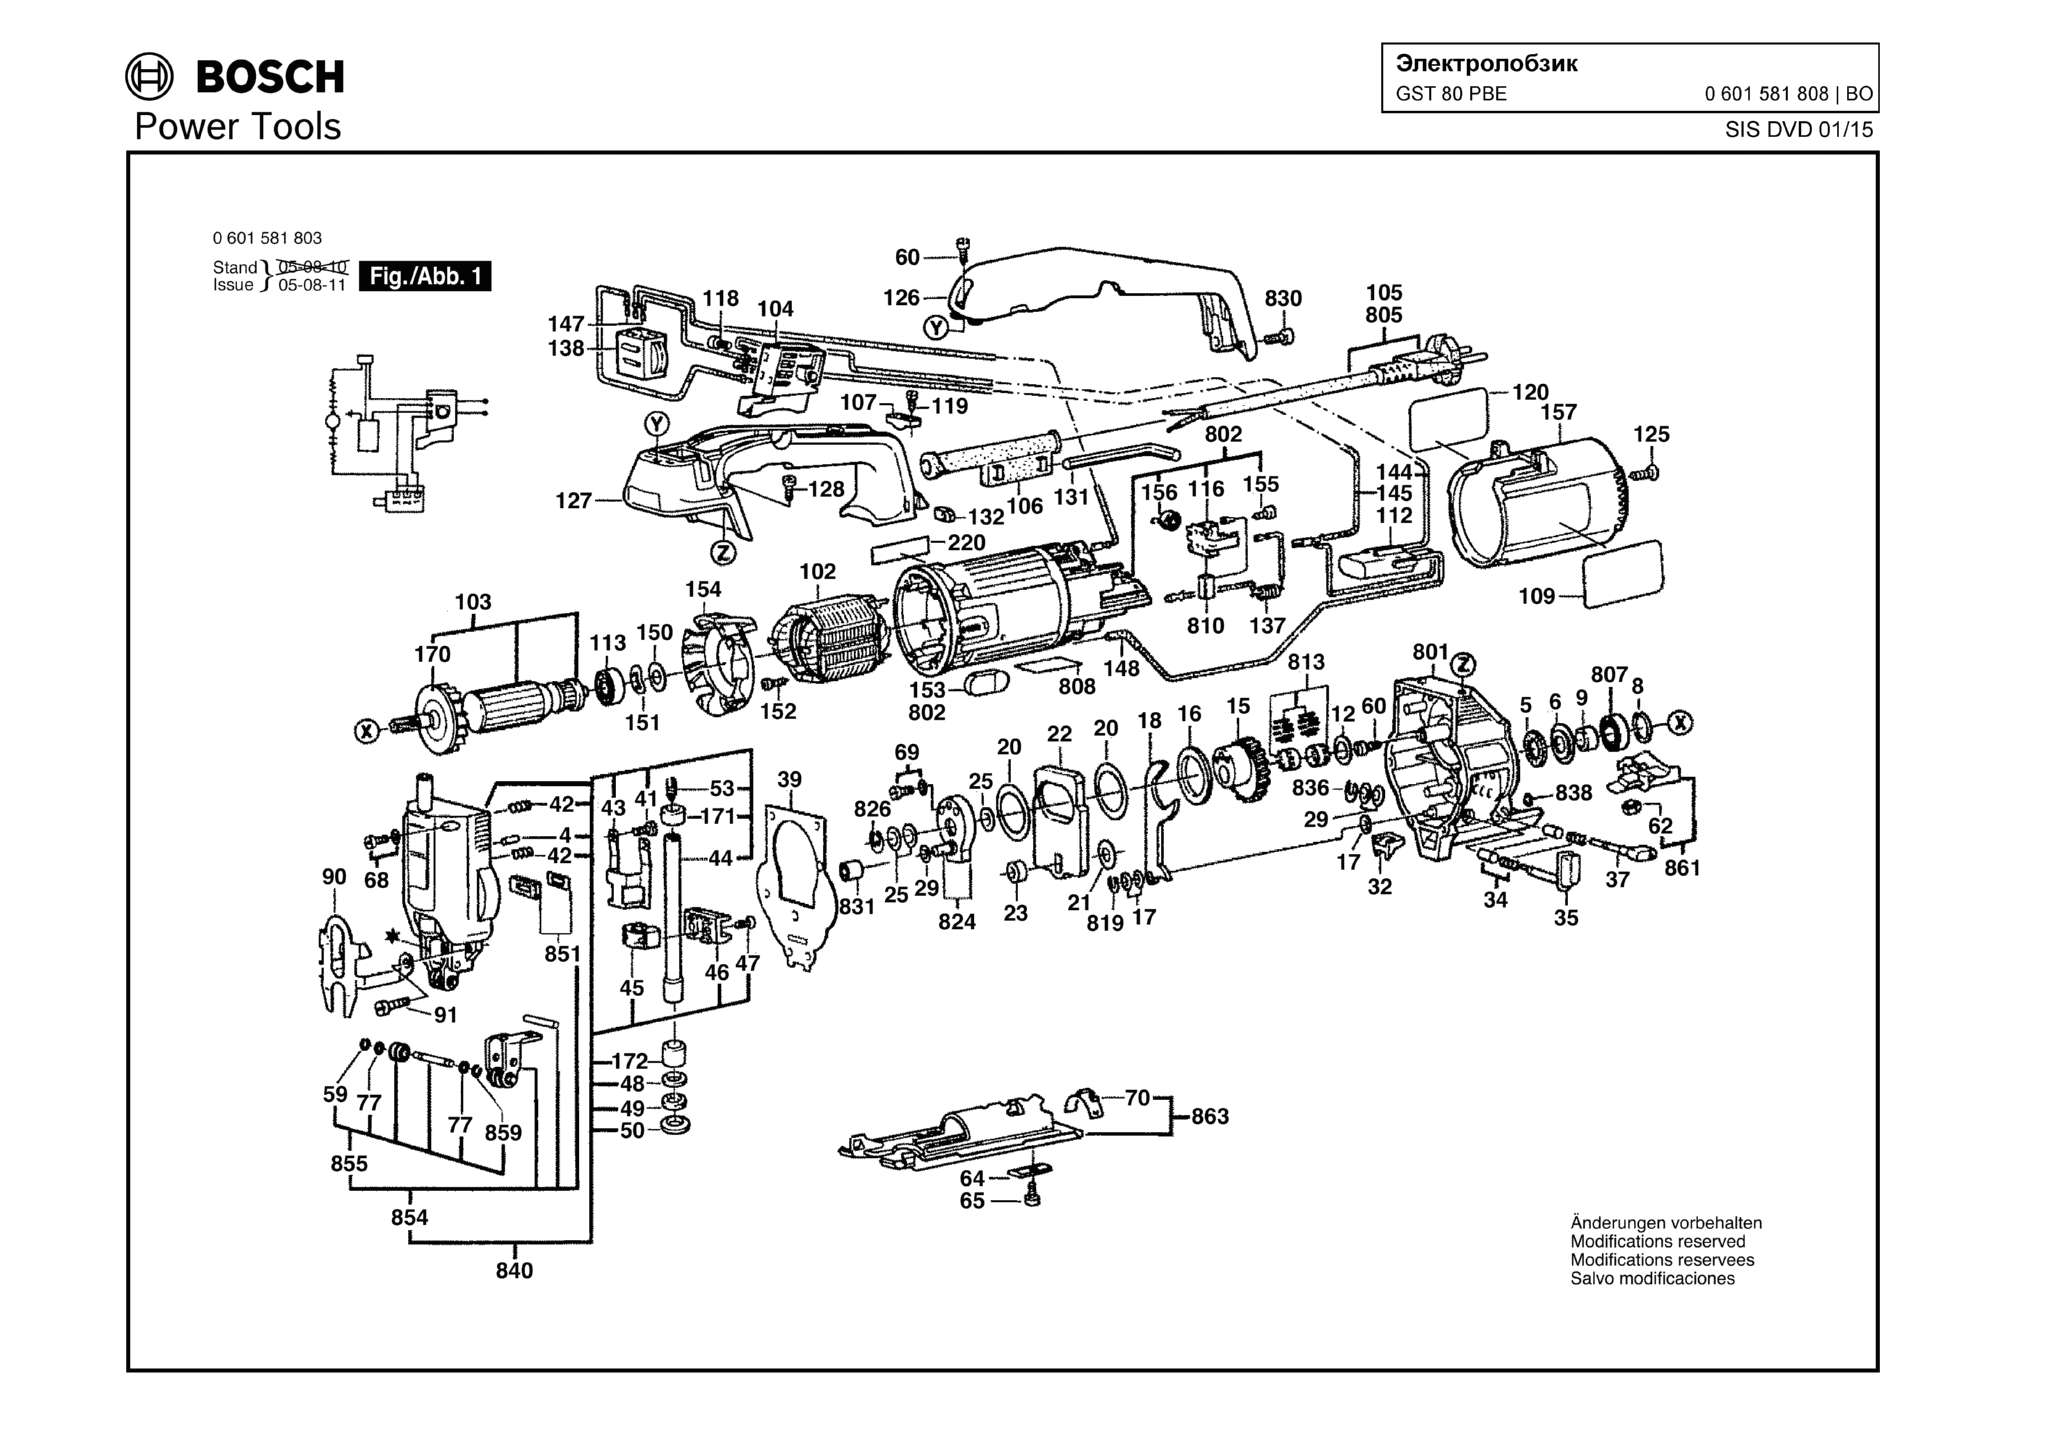 Запчасти, схема и деталировка Bosch GST 80 PBE (ТИП 0601581808)